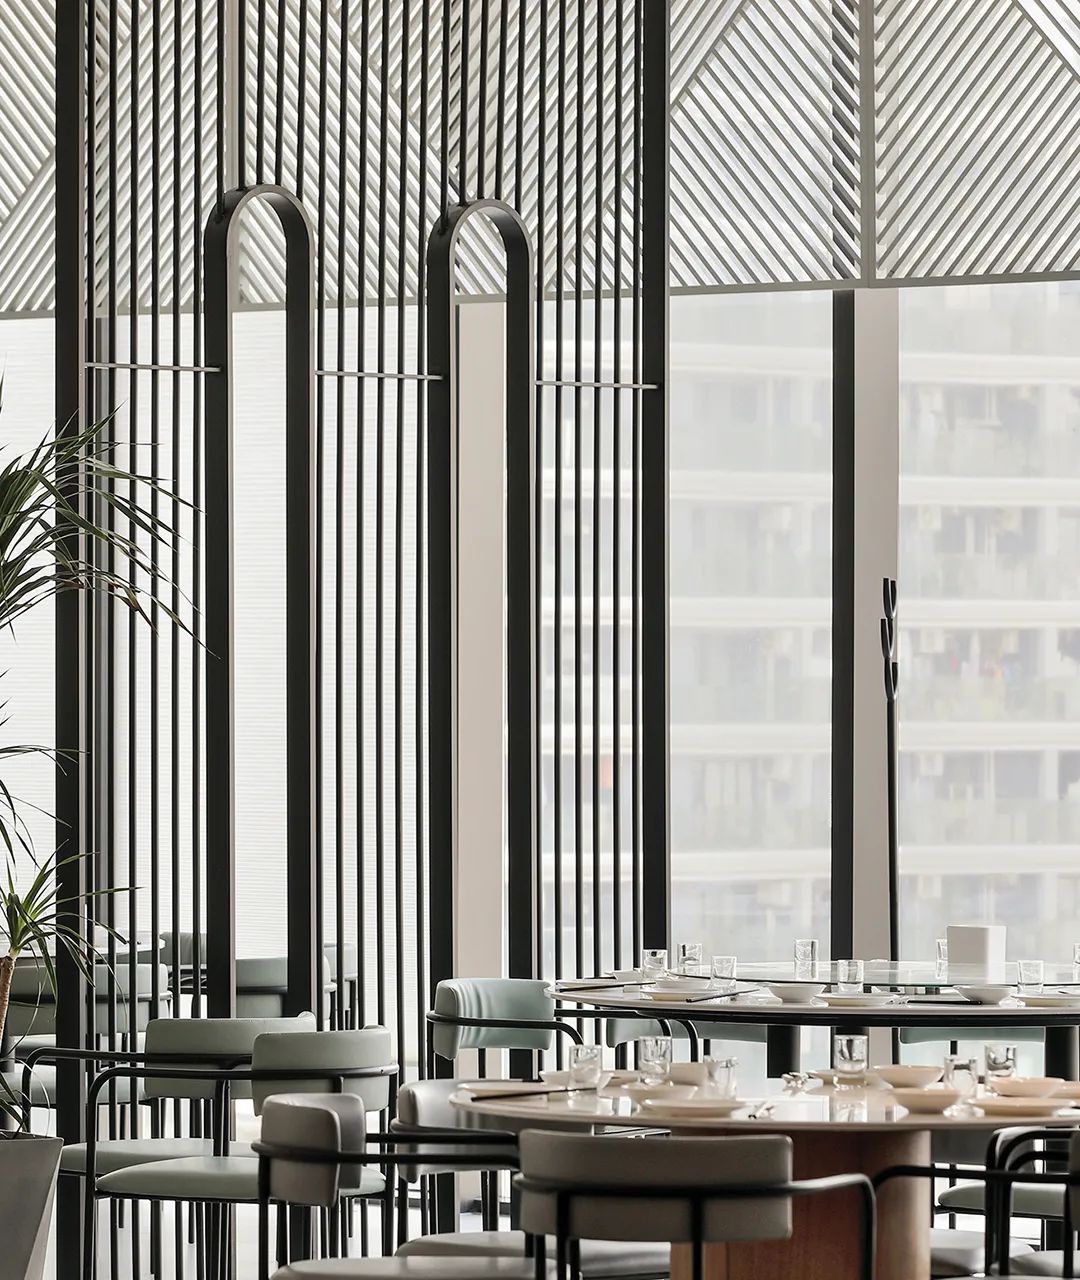 郑州小铜馆特色融合餐厅装修设计案例